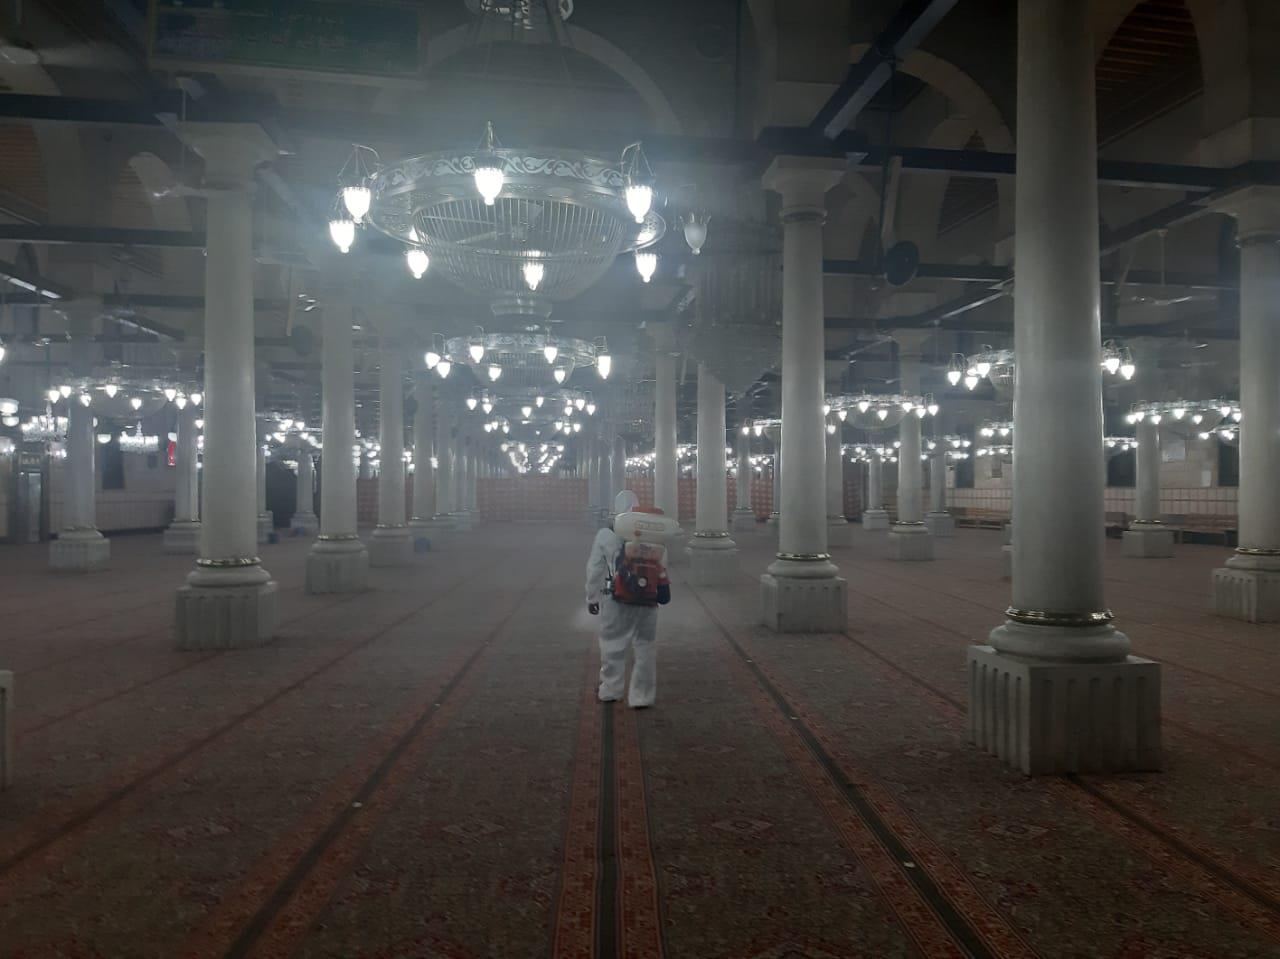  انطلاق أعمال التعقيم بمسجد الإمام الحسين تمهيدا لقرار إعادة الفتح 